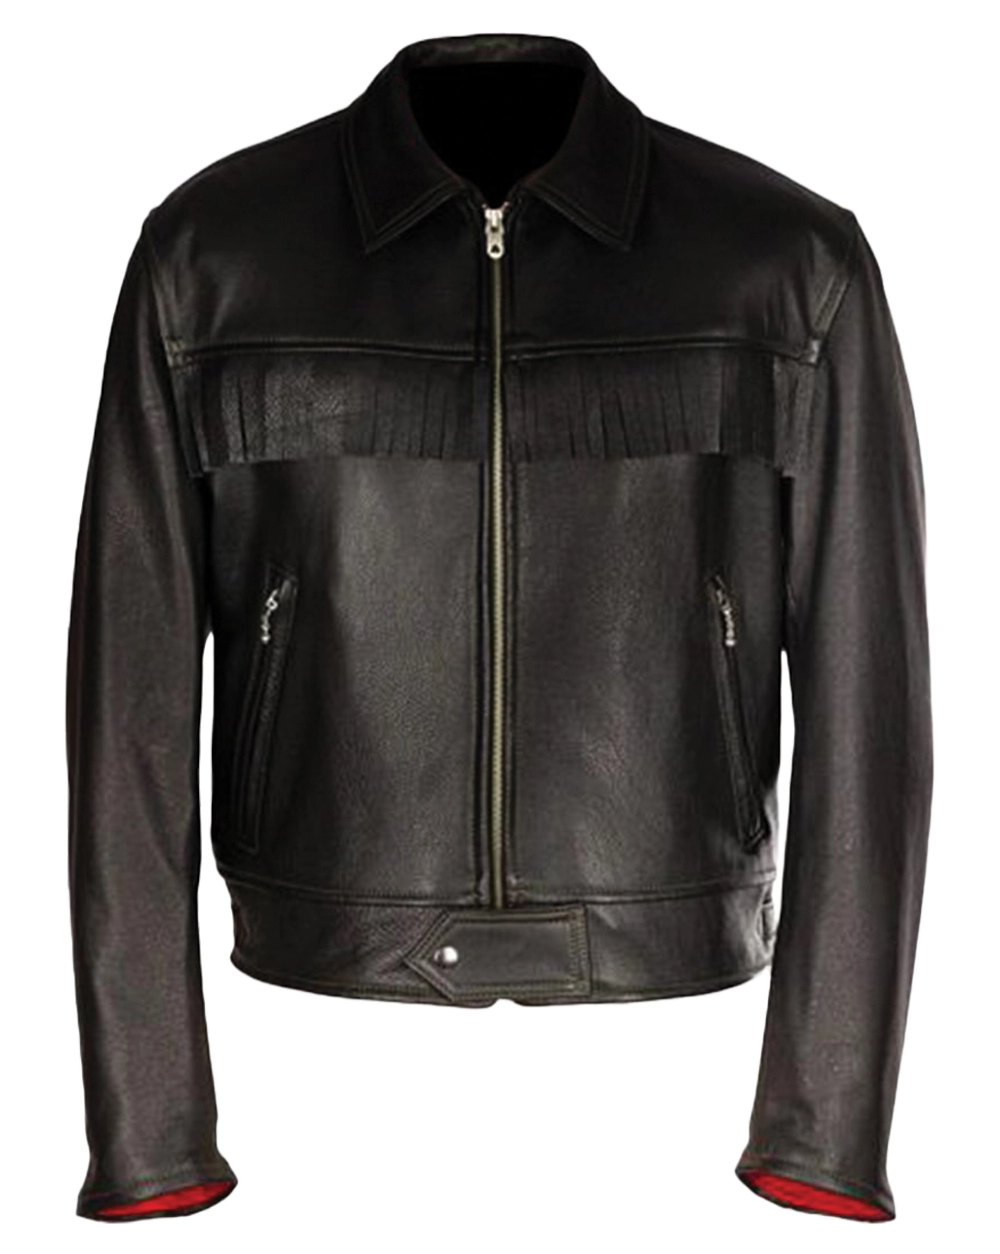 Black biker jacket for men